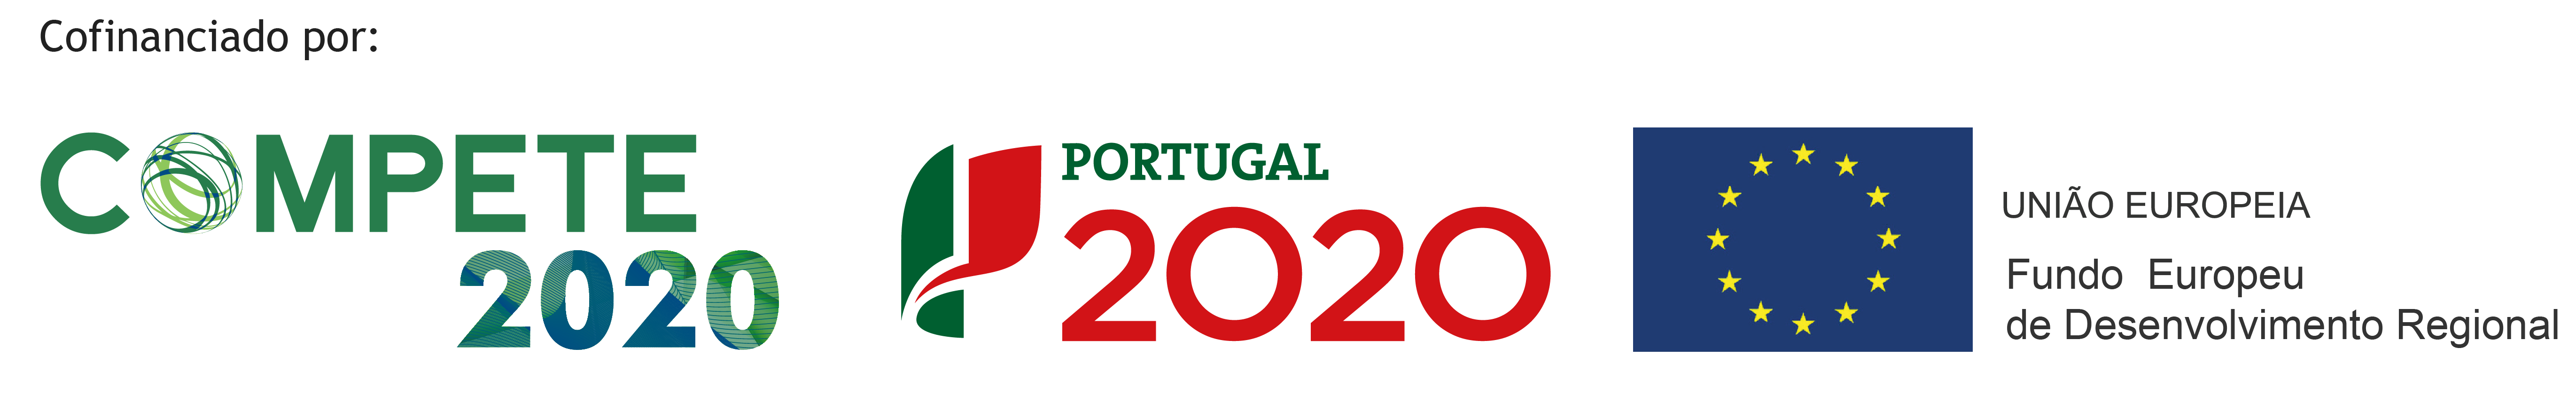 centro2020 portugal 2020 união europeia